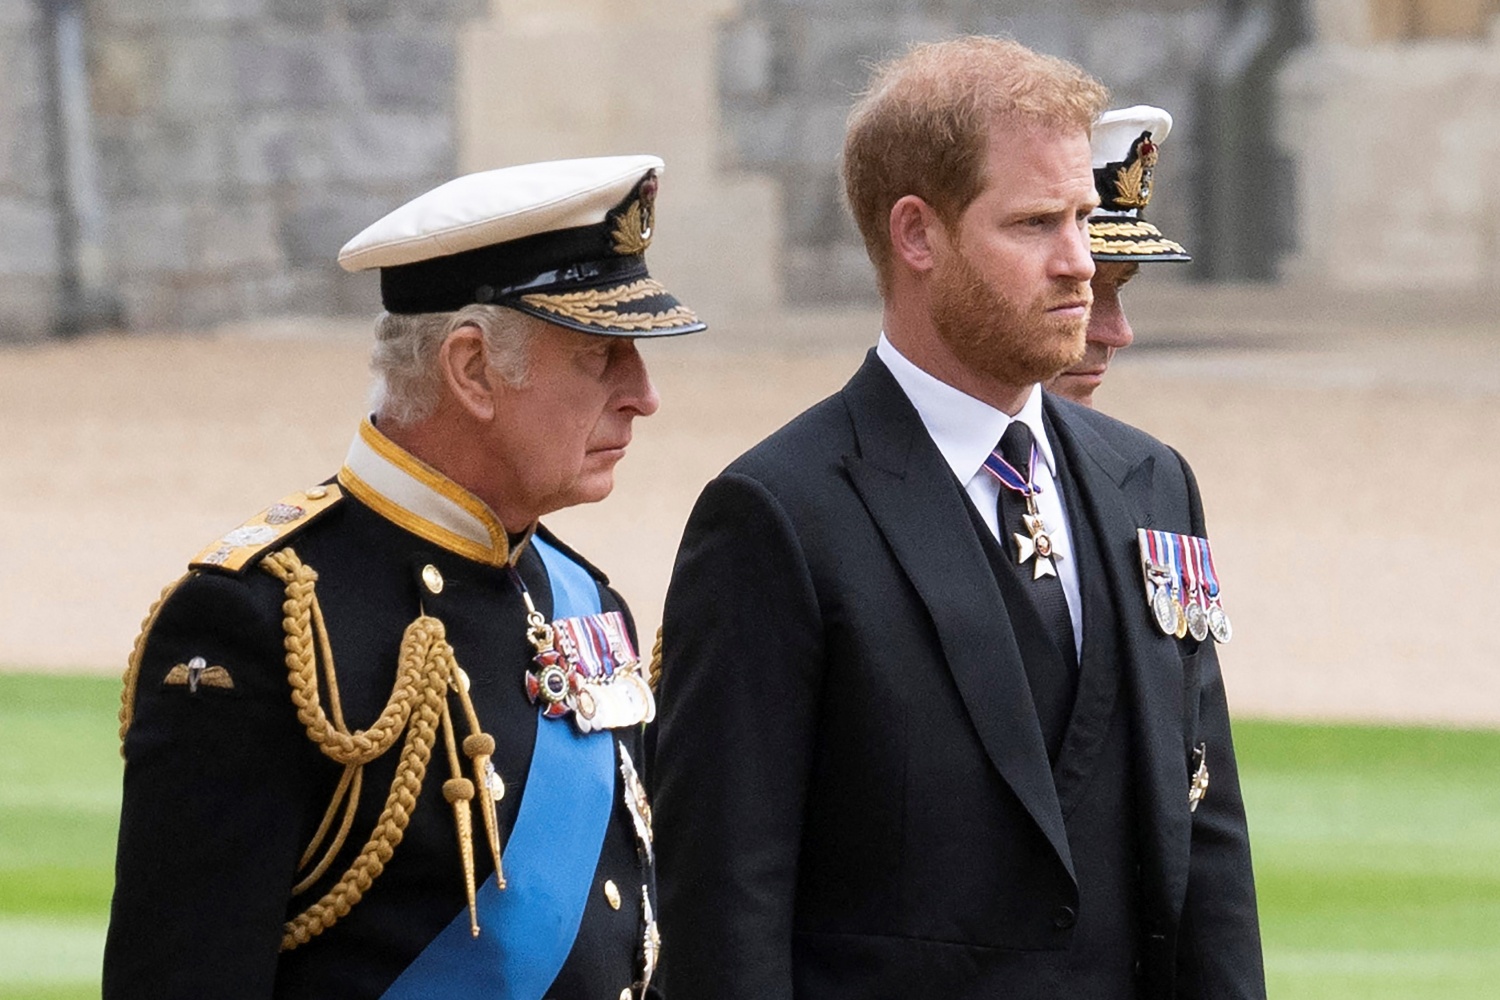 King Charles III, Prince Harry